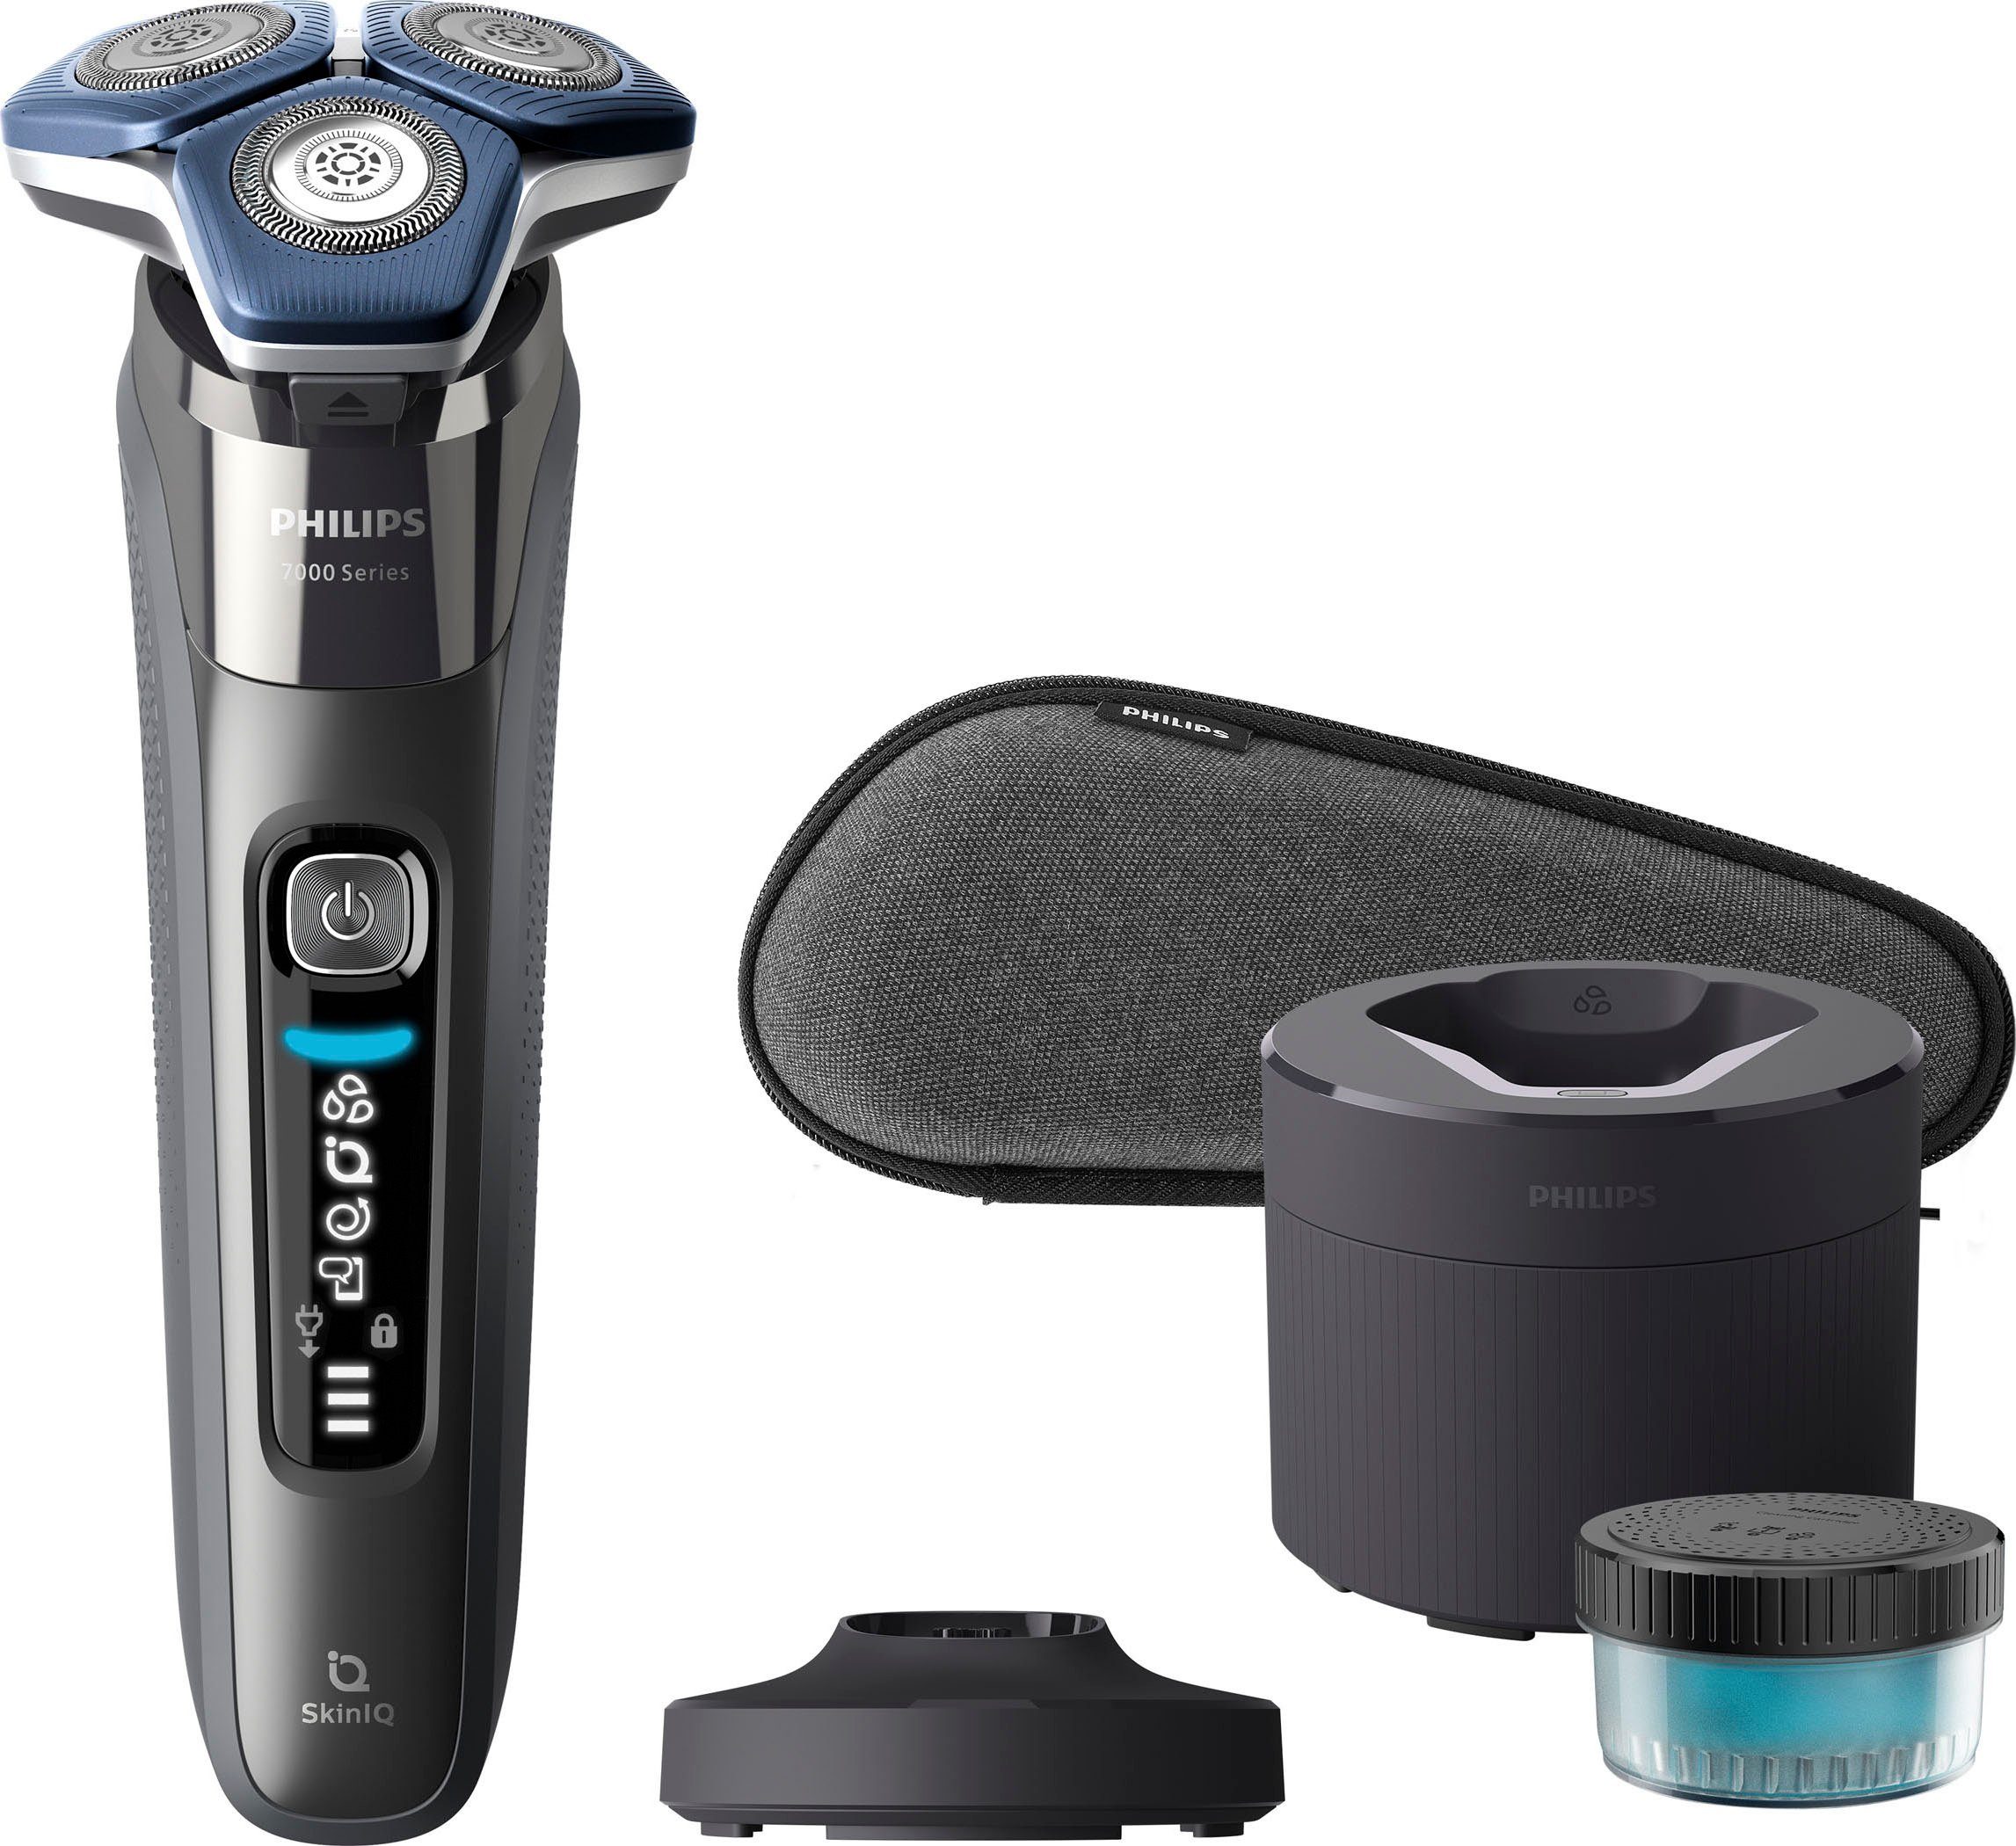 Philips Elektrorasierer Shaver Reinigungskartusche, Ladestand, SkinIQ Etui, Präzisionstrimmer, Series S7887/55, Reinigungsstation, 1 Technologie mit 7000 ausklappbarer